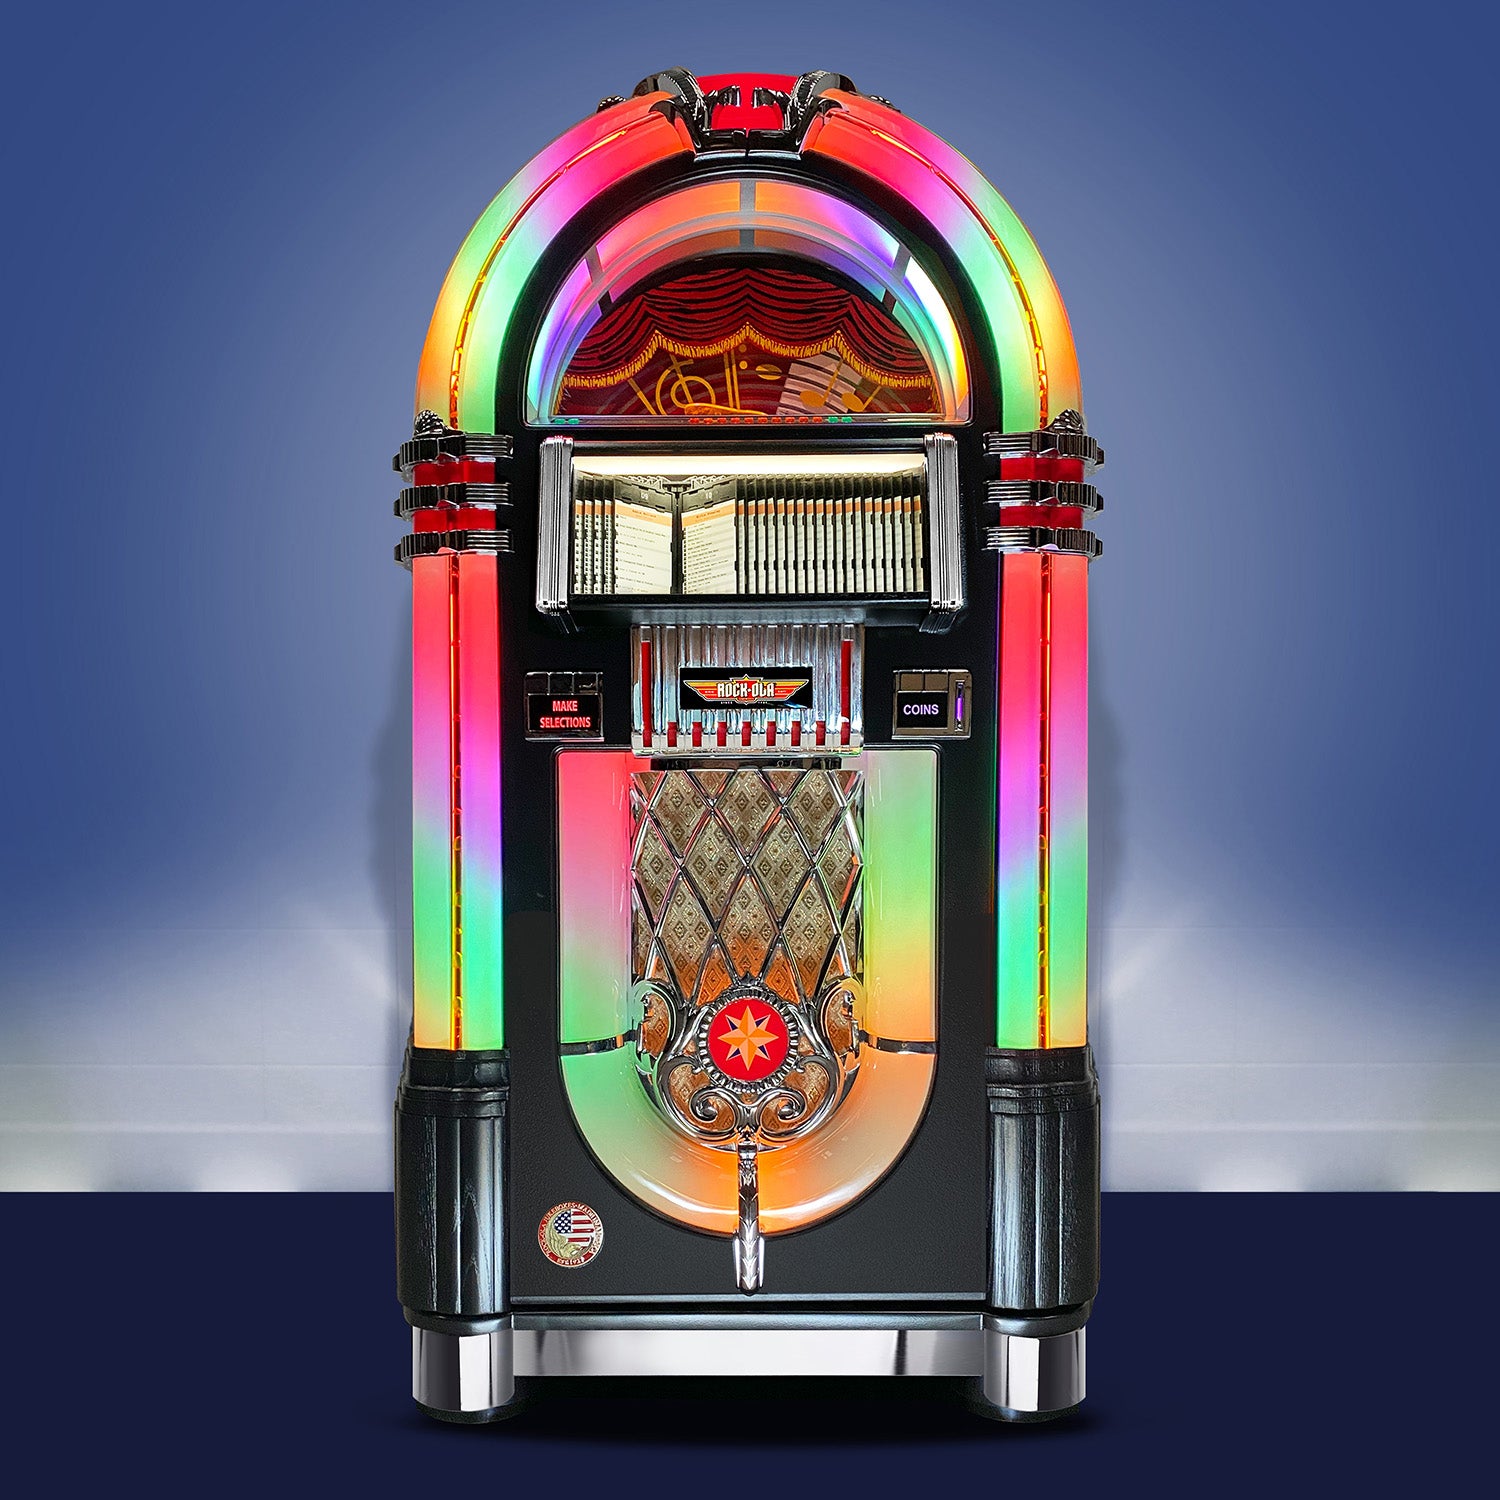 Rock-Ola Bubbler CD Jukebox In Black - Gaming Blaze